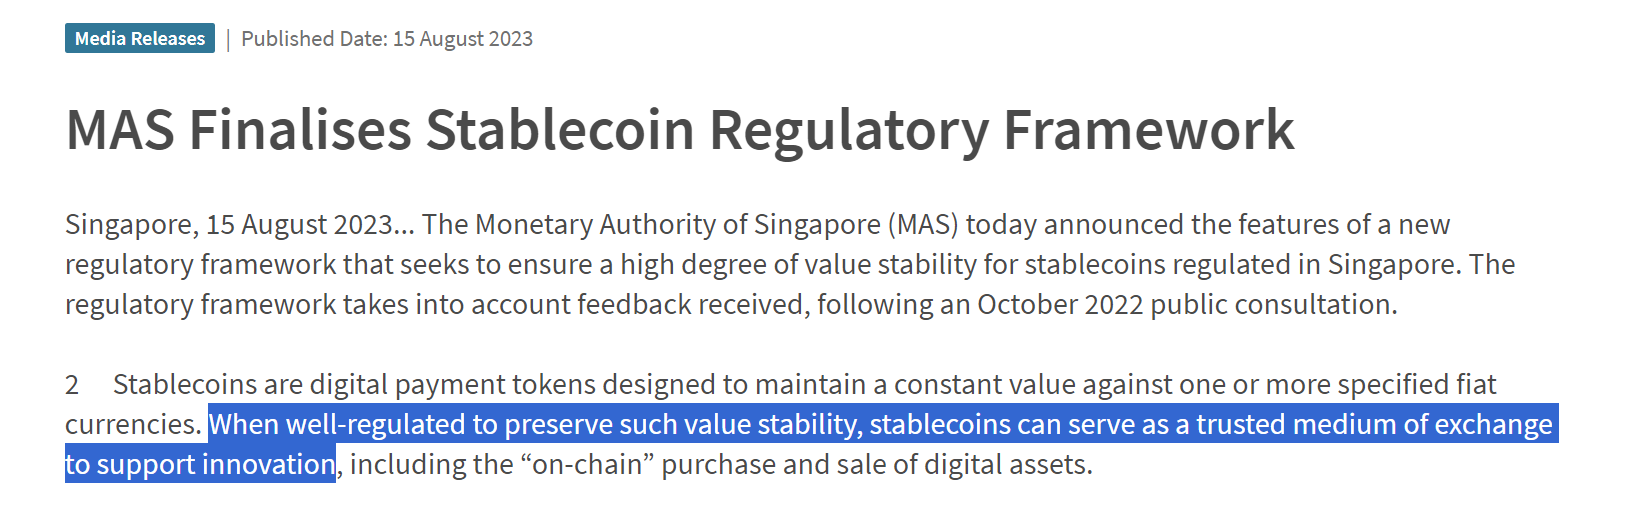 新加坡央行发布稳定币监管框架